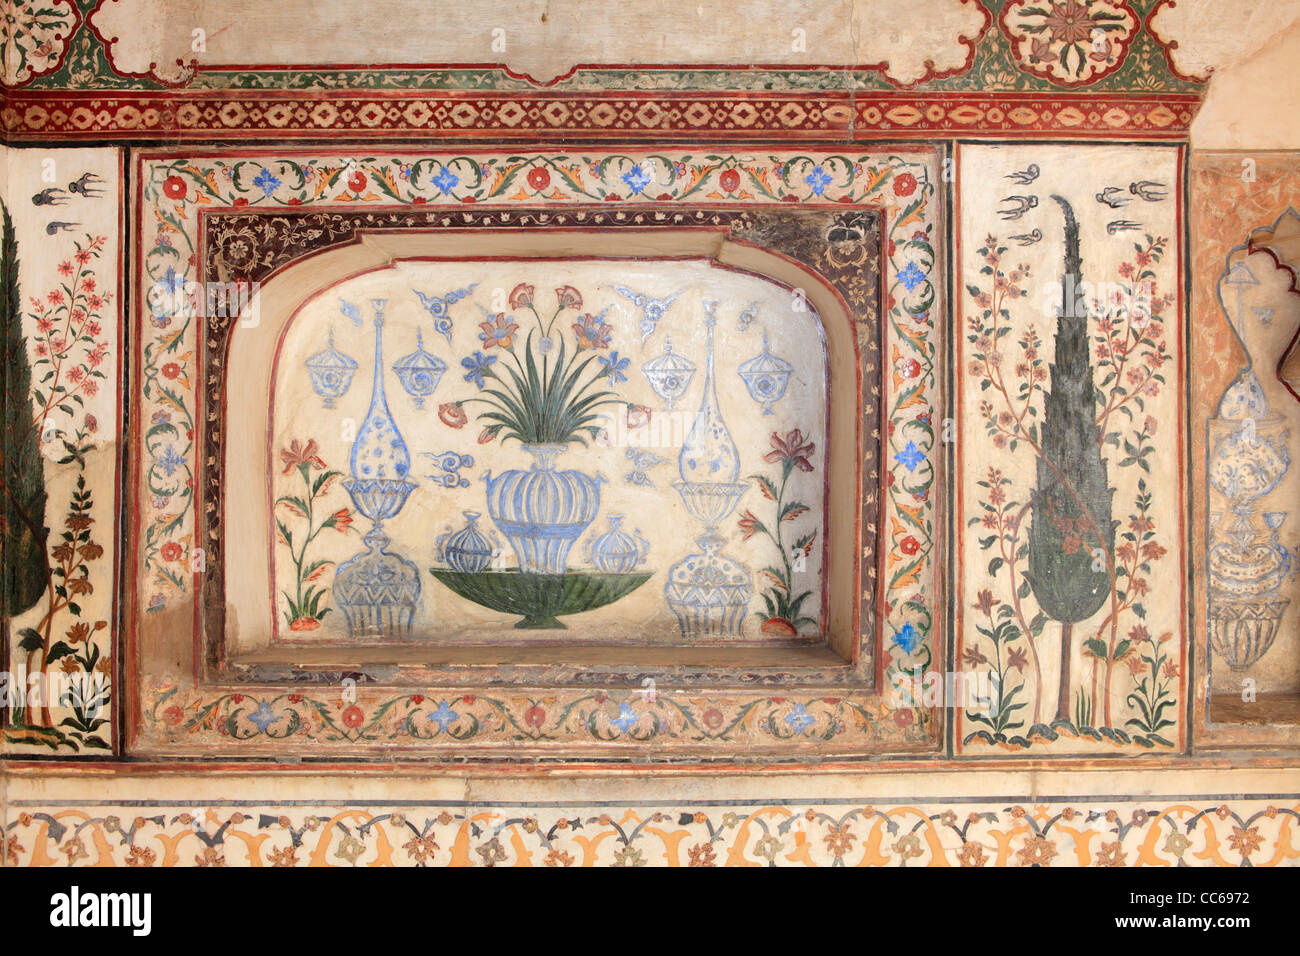 La decoración floral de la tumba de Itmad-Ud-Daulah, también conocida como Baby Taj Mahal, Agra, India Foto de stock